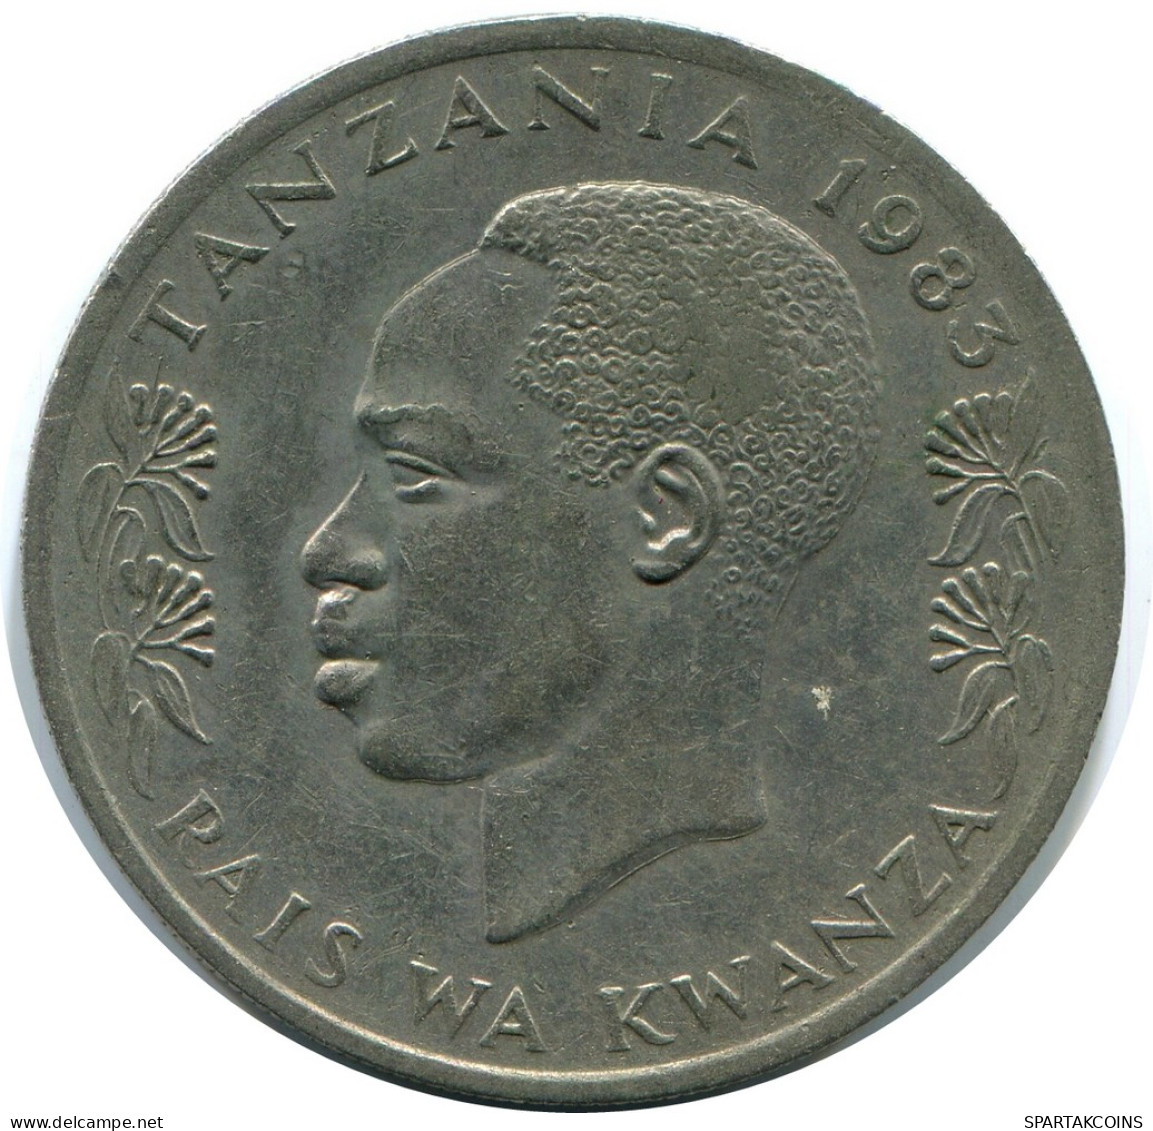 1 SHILINGI 1983 TANZANIA Coin #AZ090.U - Tanzanía